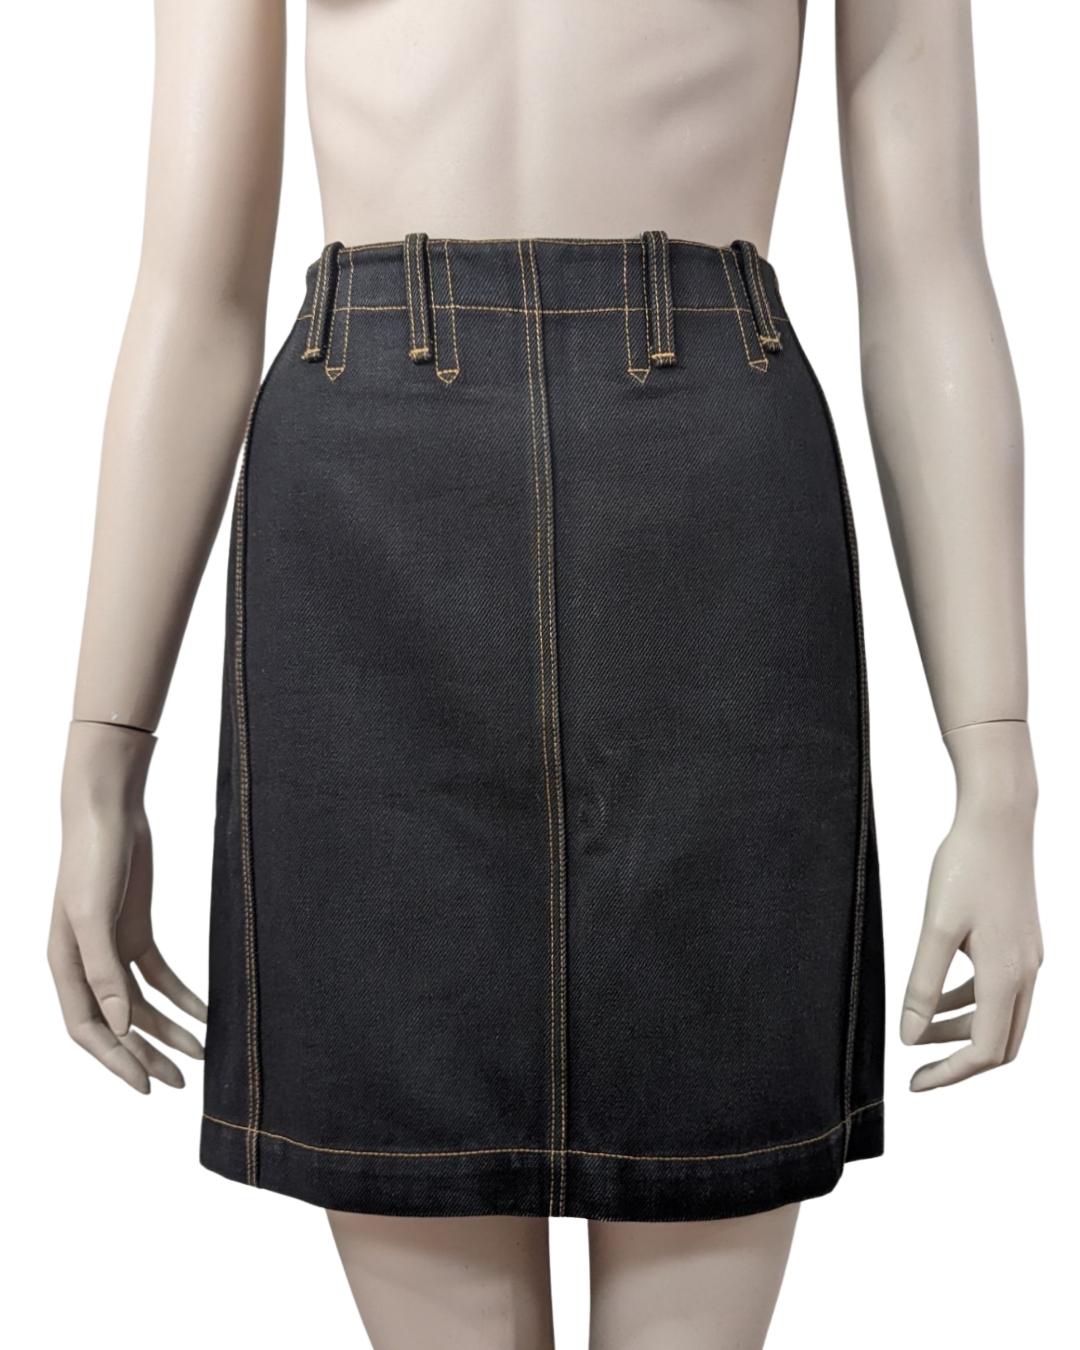 Azzedine Alaïa S/S 1991 High Waist Lace-up Denim Skirt For Sale 2